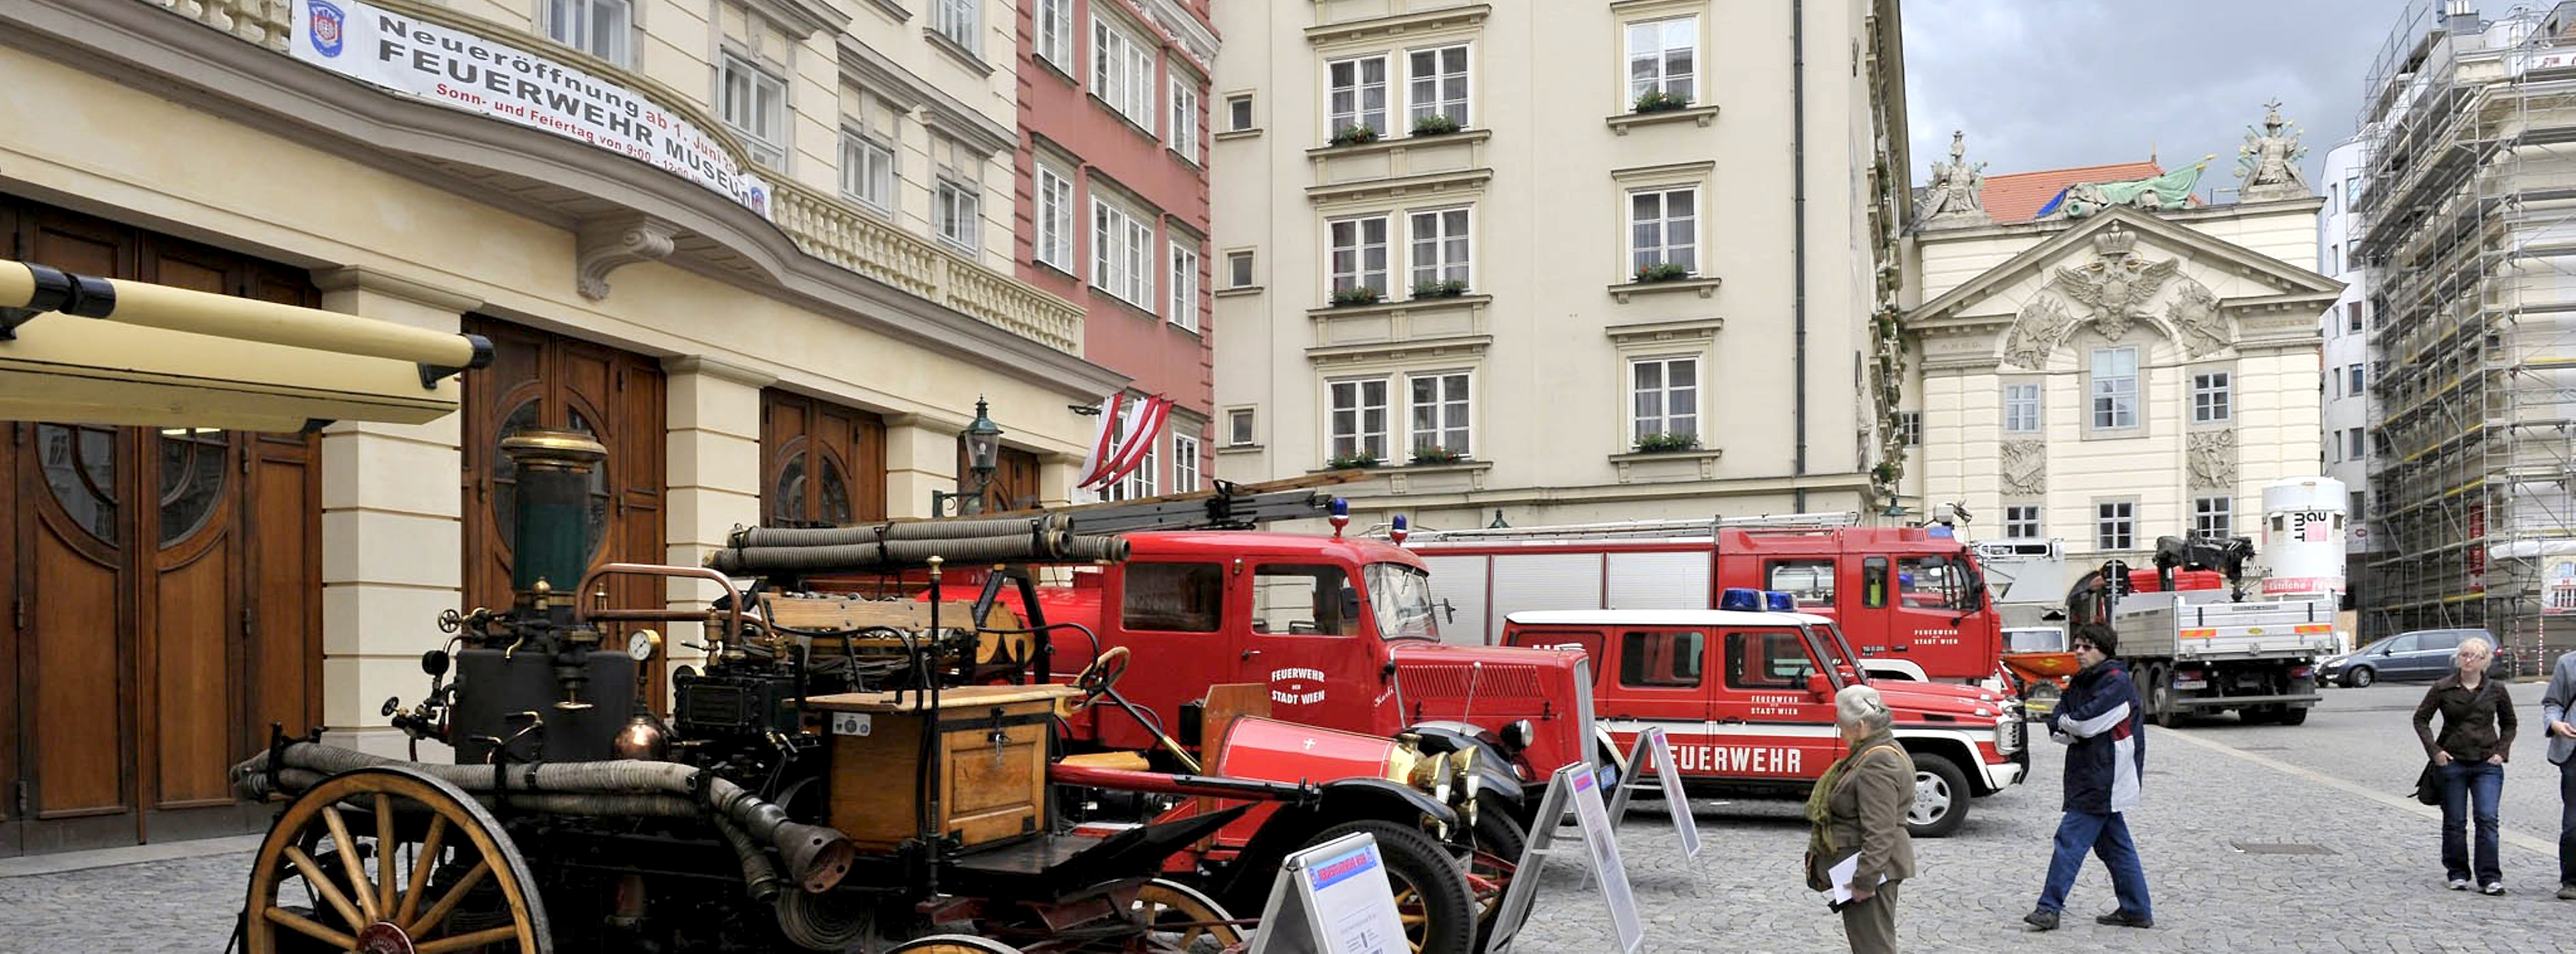 Foto von einer Reihe an historischen Feuerwehrfahrzeugen vor dem Feuerwehrmuseum Wien.